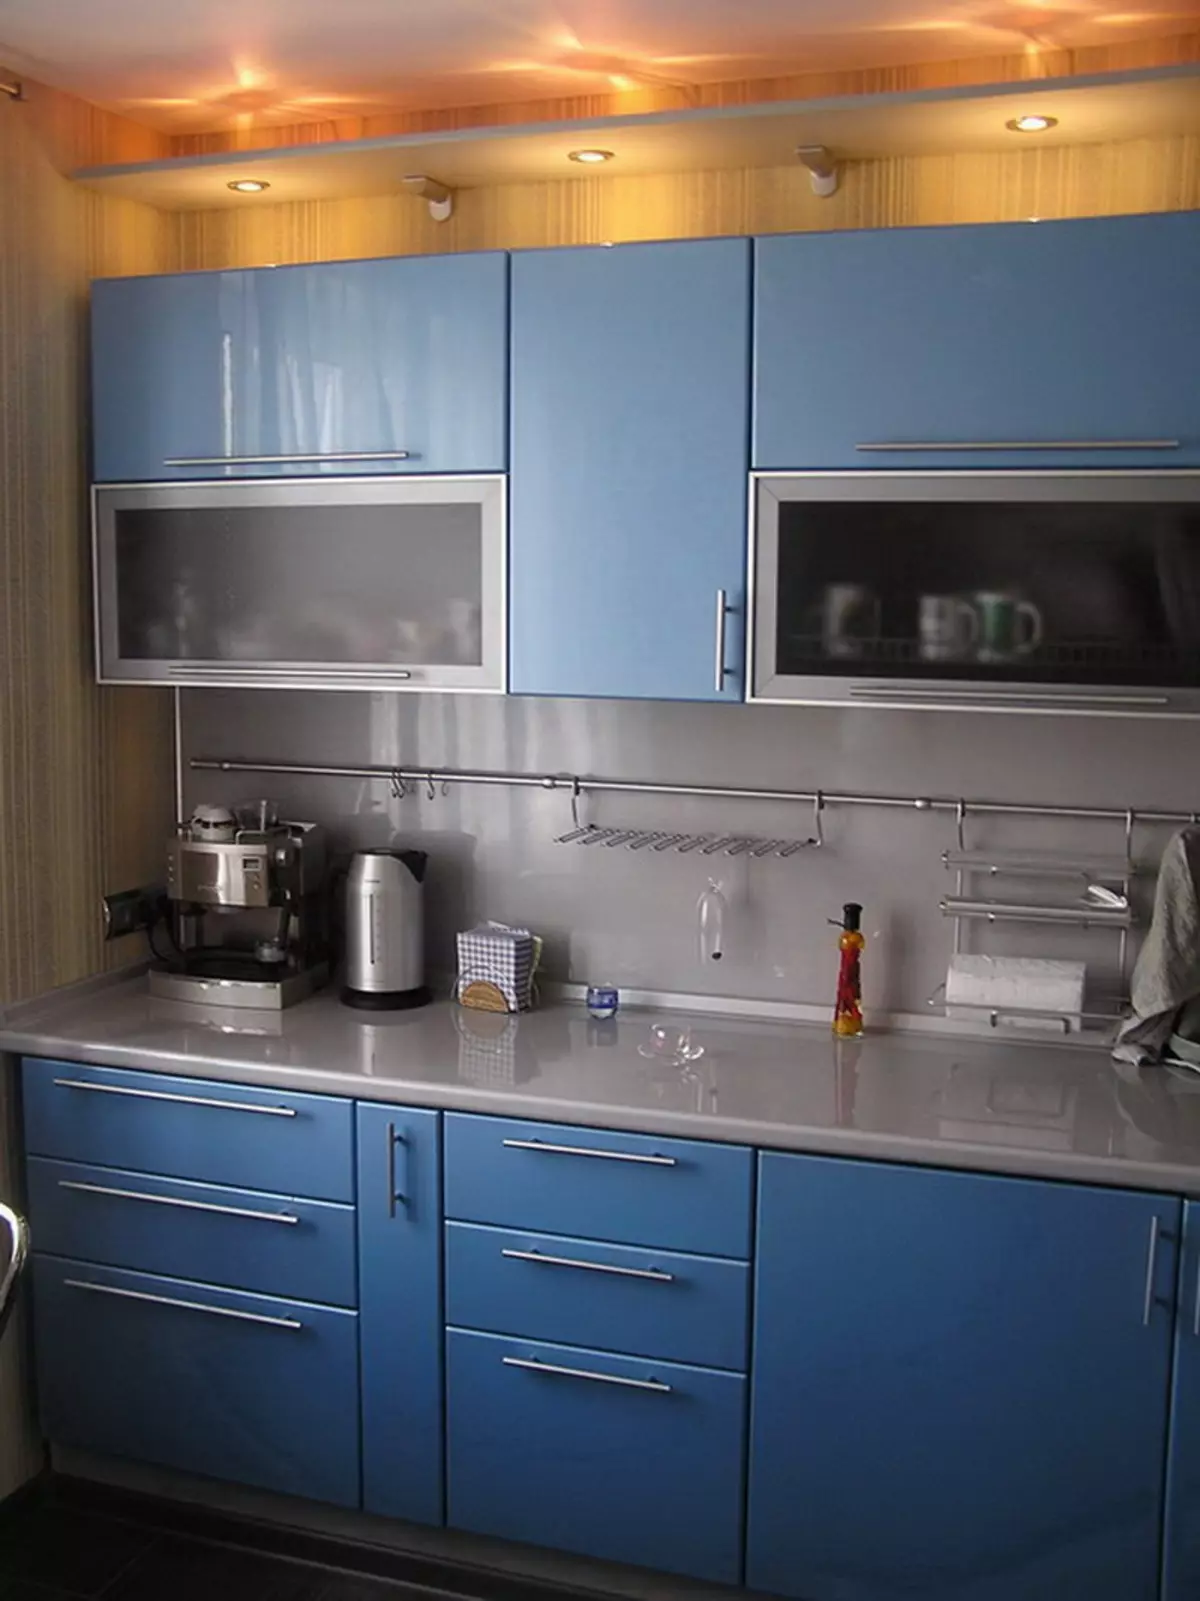 Bucătărie albastră (82 fotografii): Ce culori sunt combinate în interiorul unui set de bucătărie albastră? Design de bucătărie în tonuri albastre ușoare și întunecate 9555_10